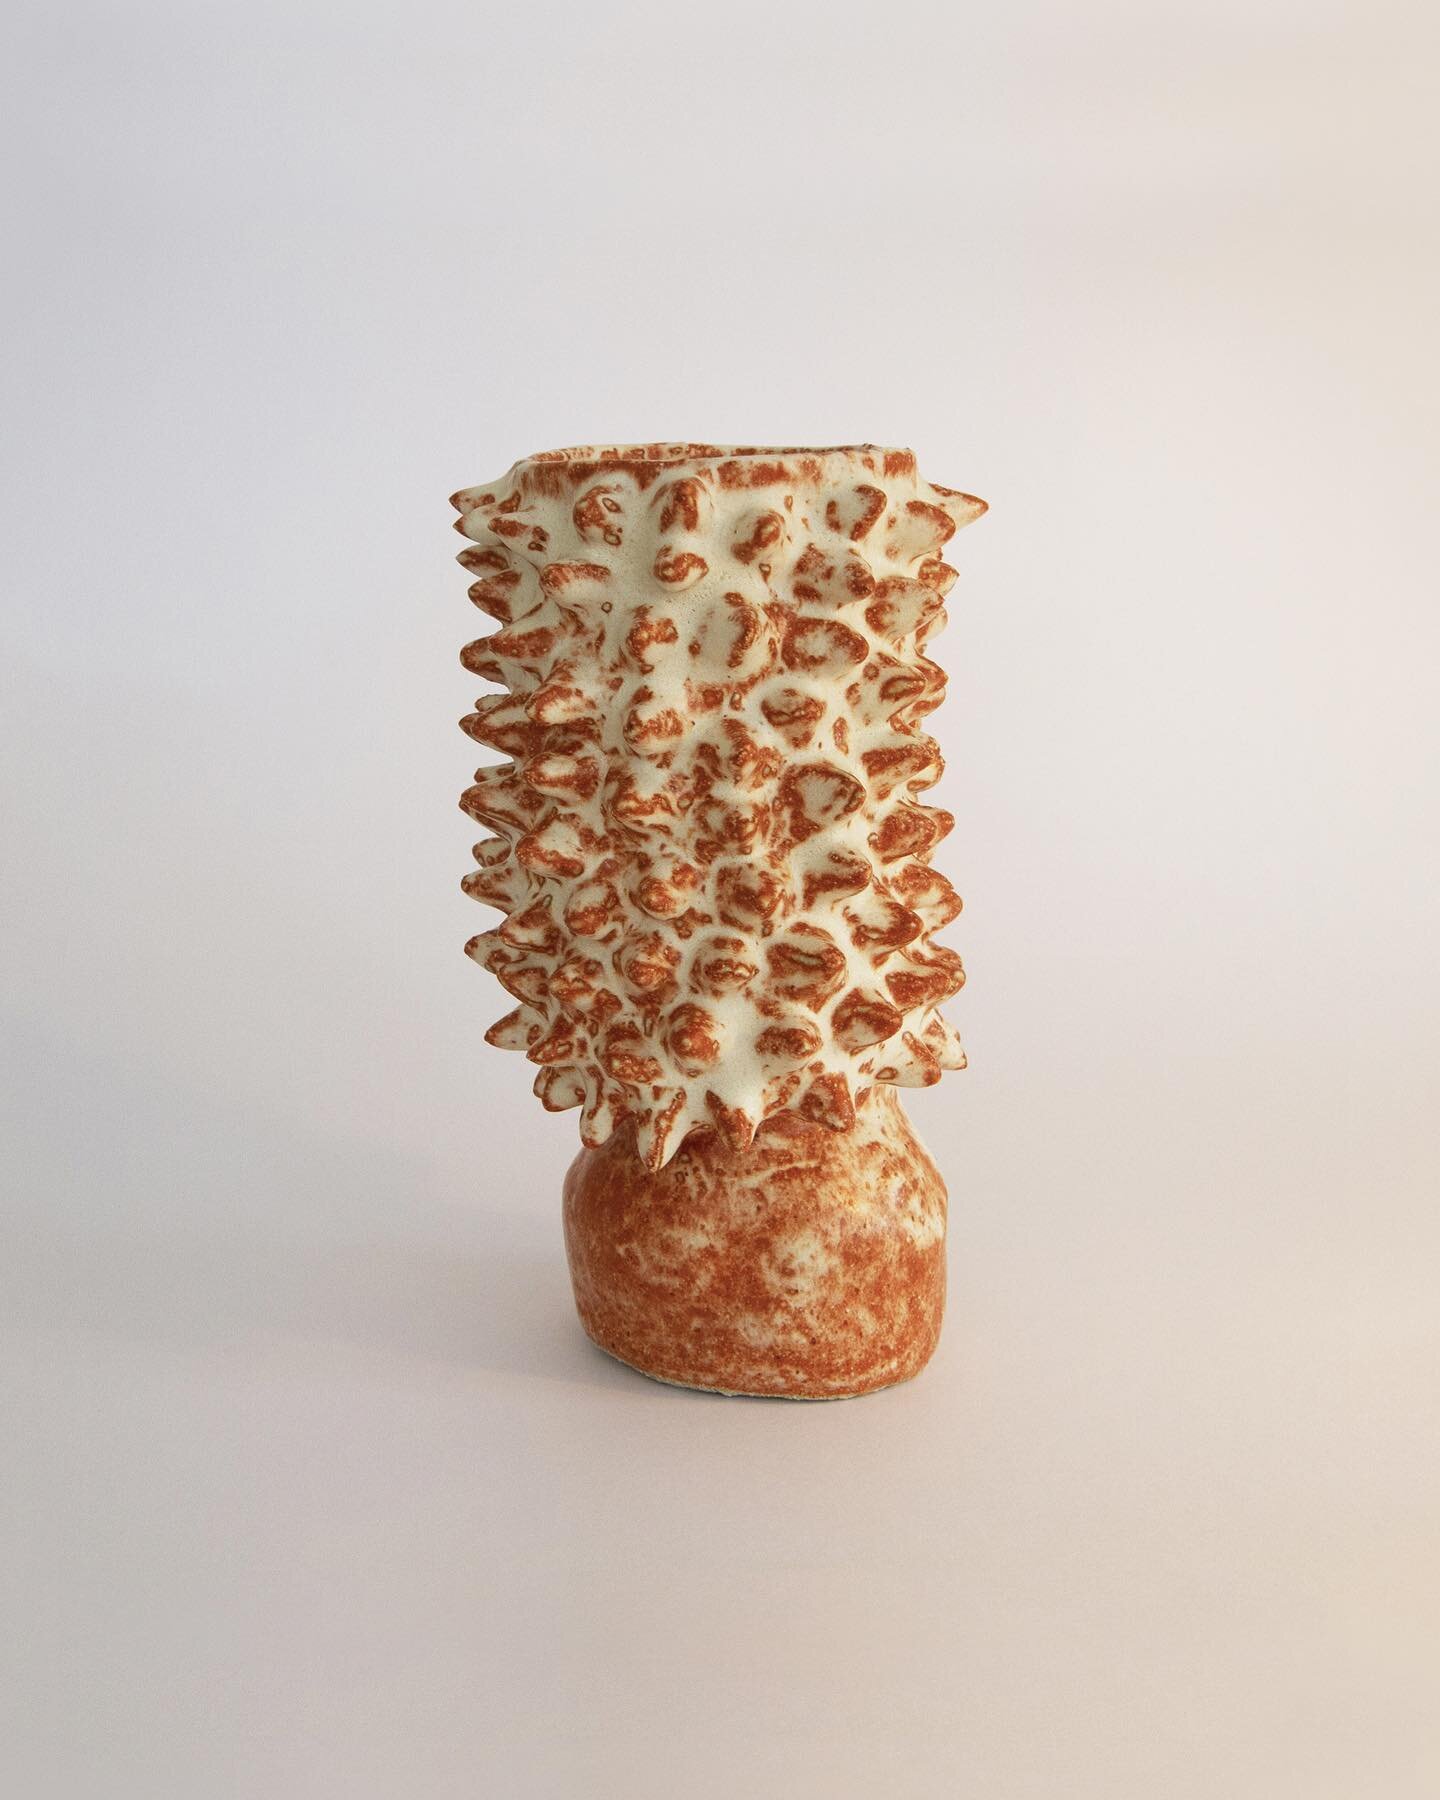 One off, Hand-formed vase with spiky texture in @keaneceramics white raku clay.
Spiky Ochre vase, 2022
.
.
.
#clay&nbsp;#cremerging&nbsp;#australianartist&nbsp;#stoneware&nbsp;#1000vases&nbsp;#emergingartist&nbsp;#emergingaustralianartist&nbsp;#keram